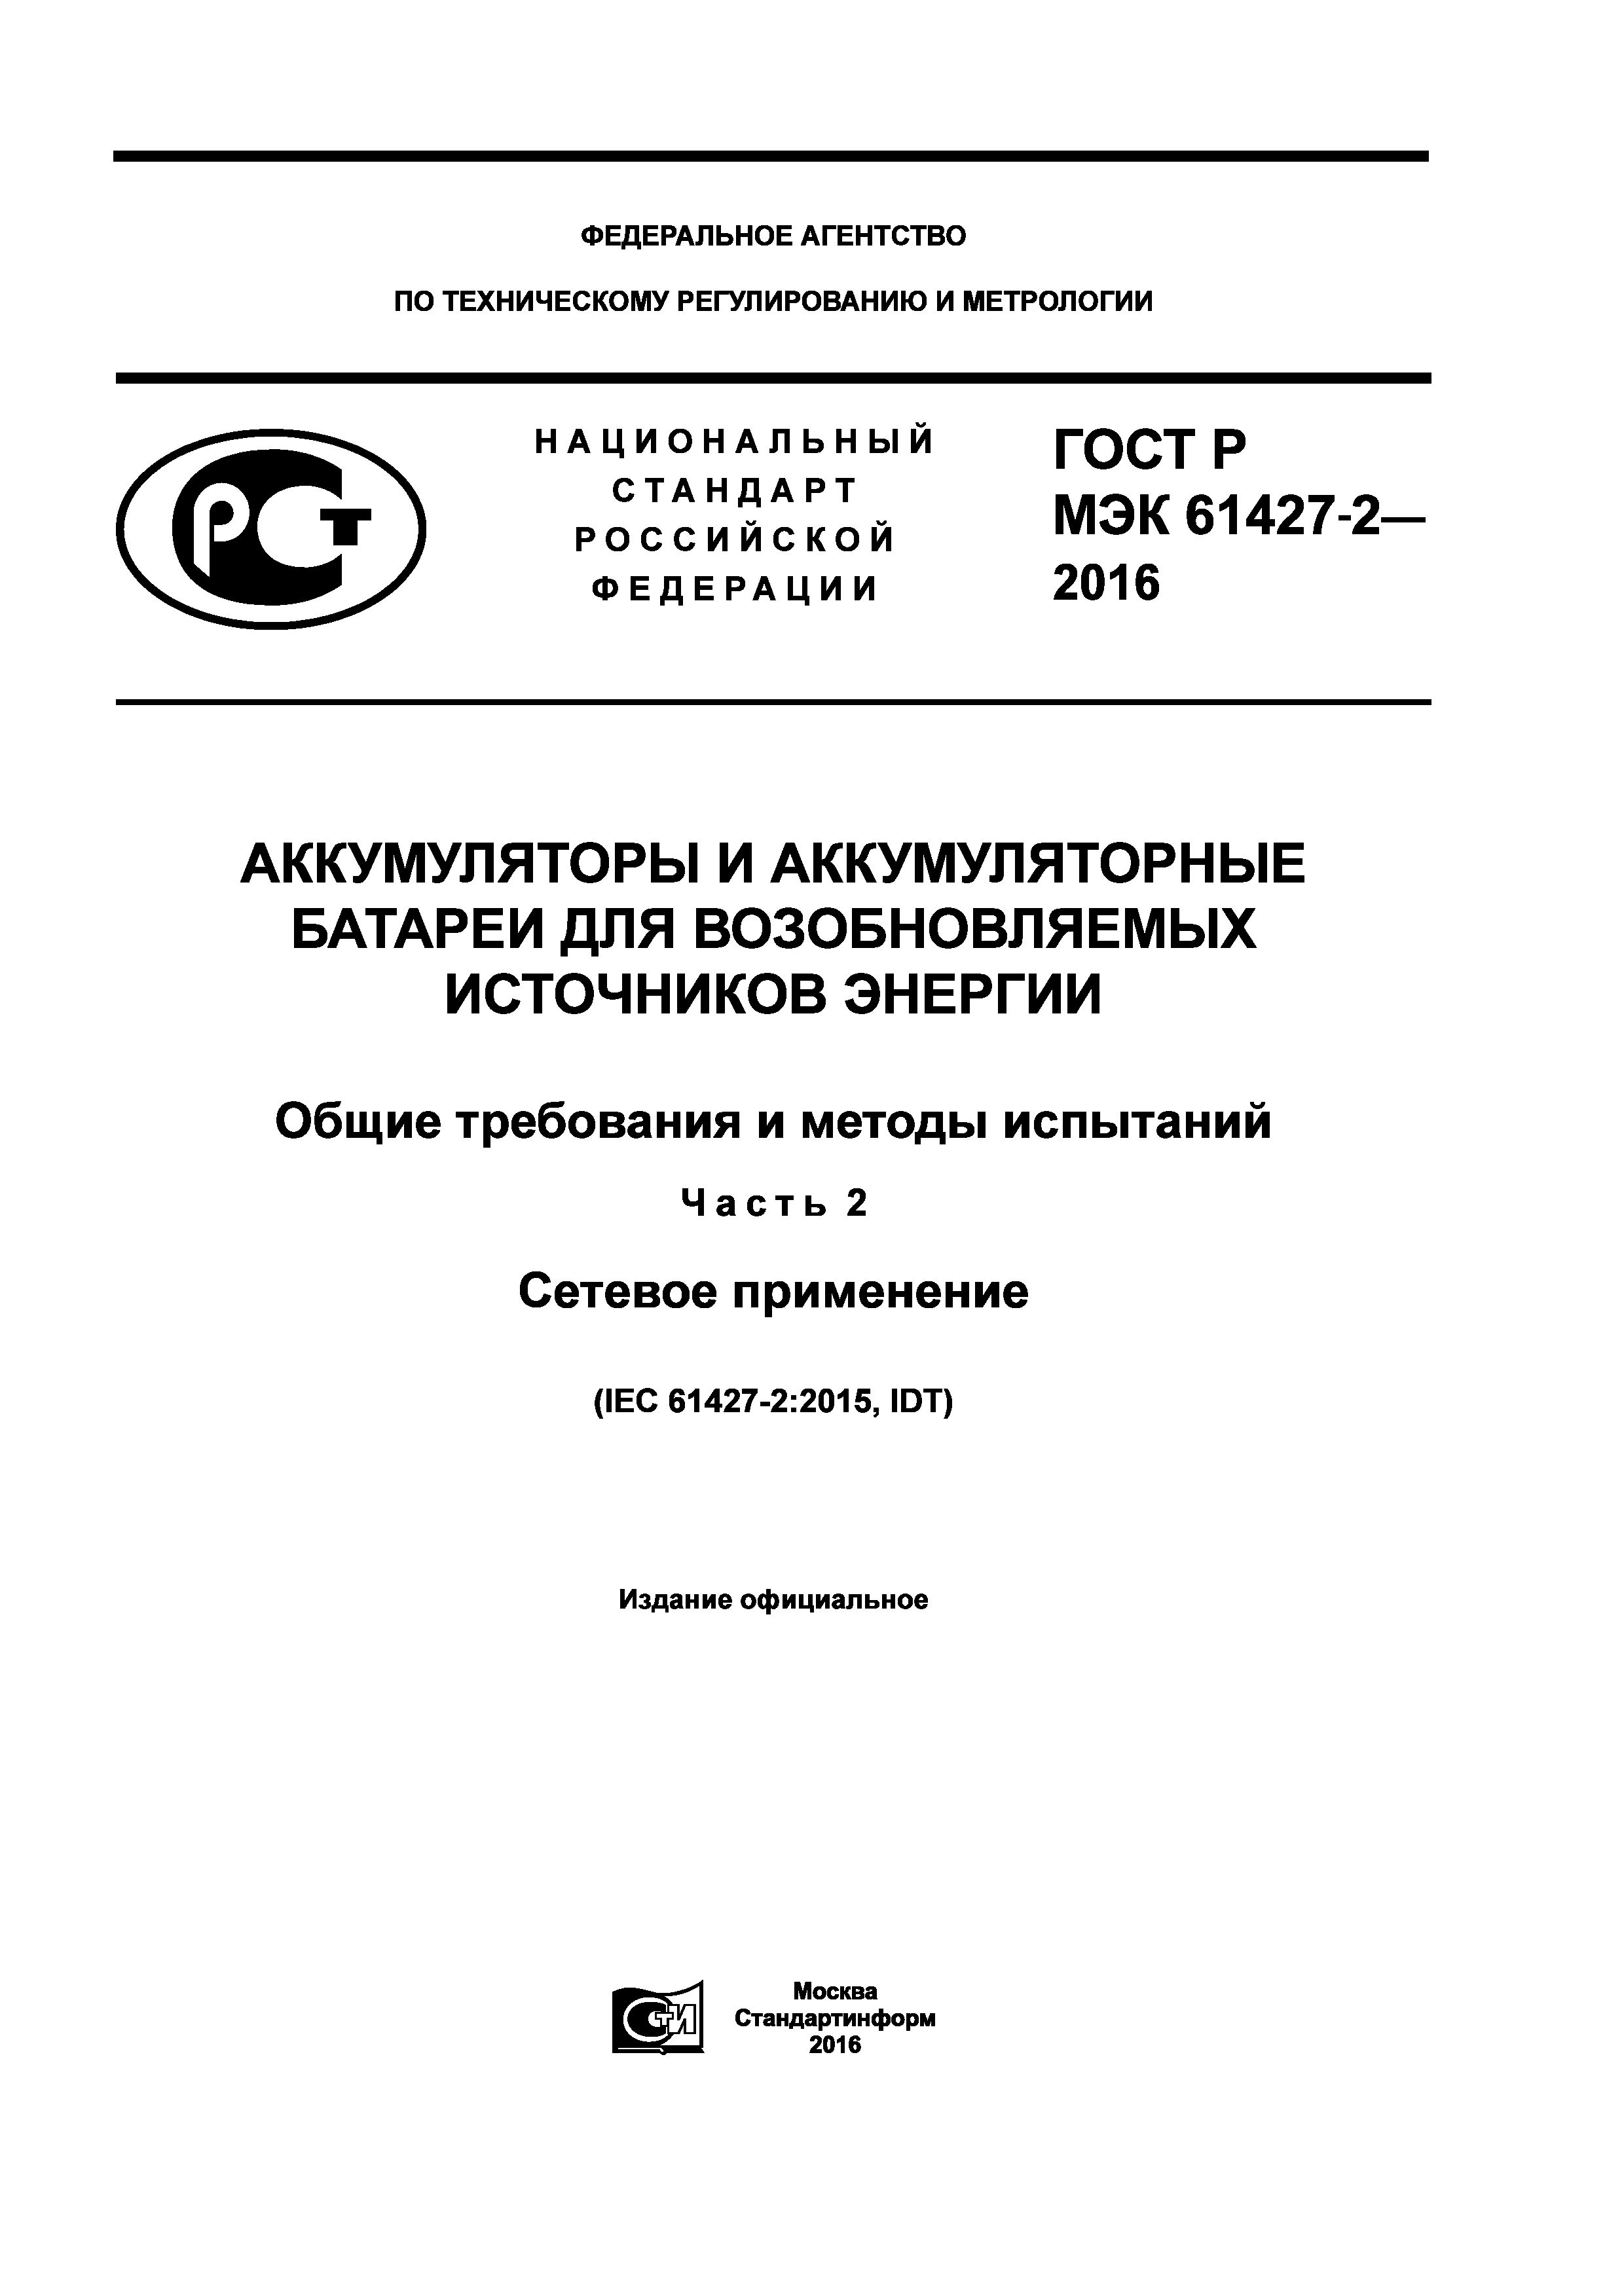 ГОСТ Р МЭК 61427-2-2016